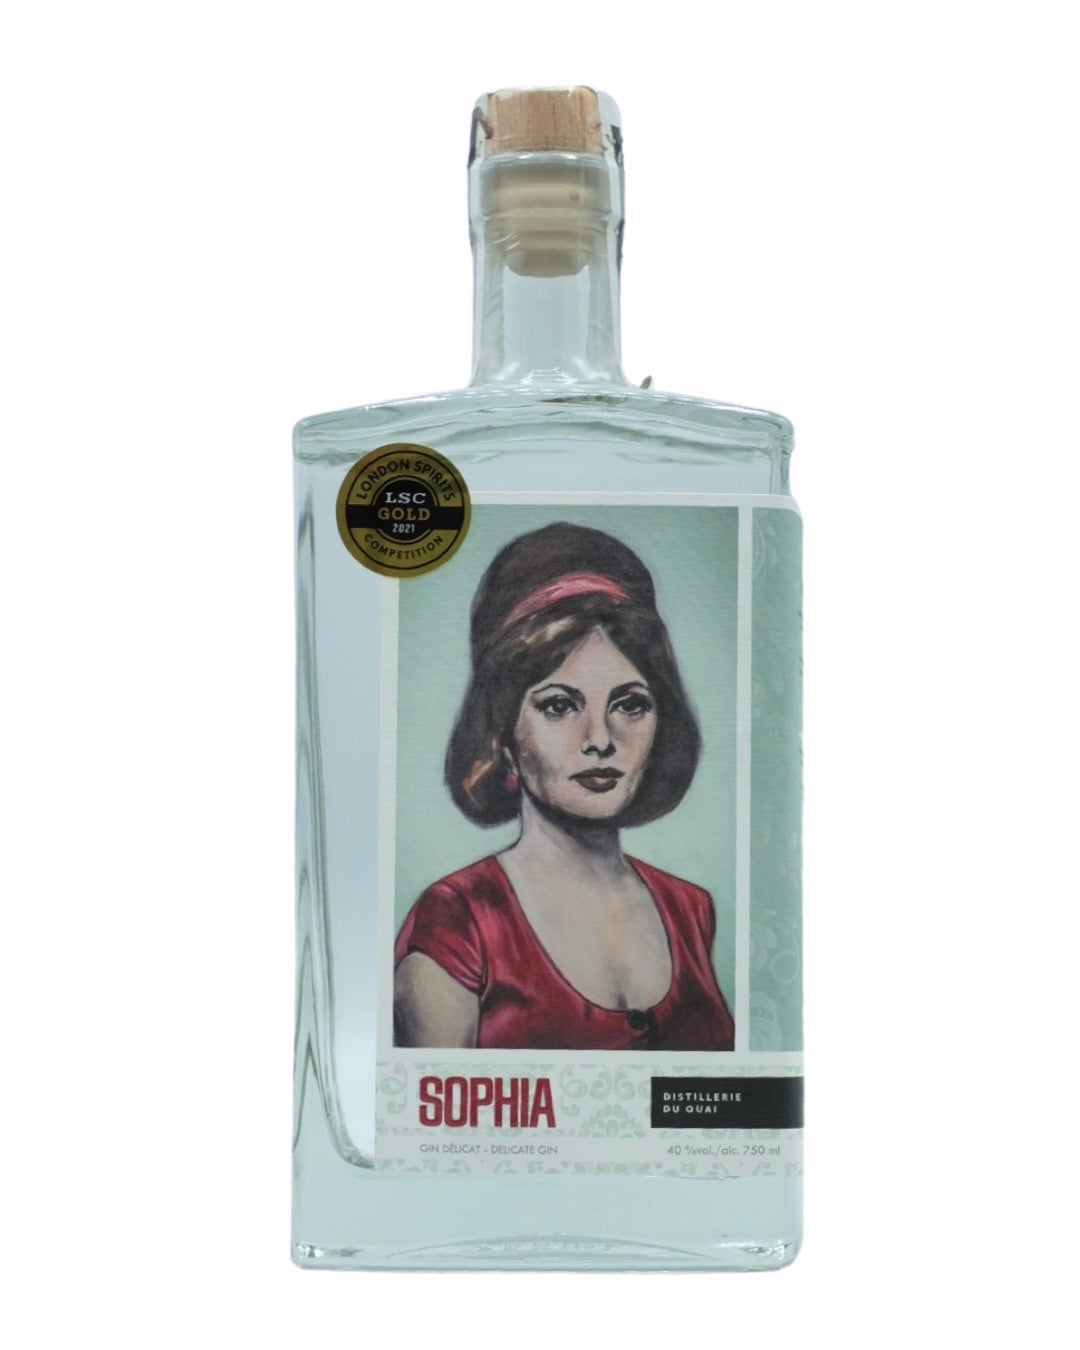 Sophia Delicate Gin